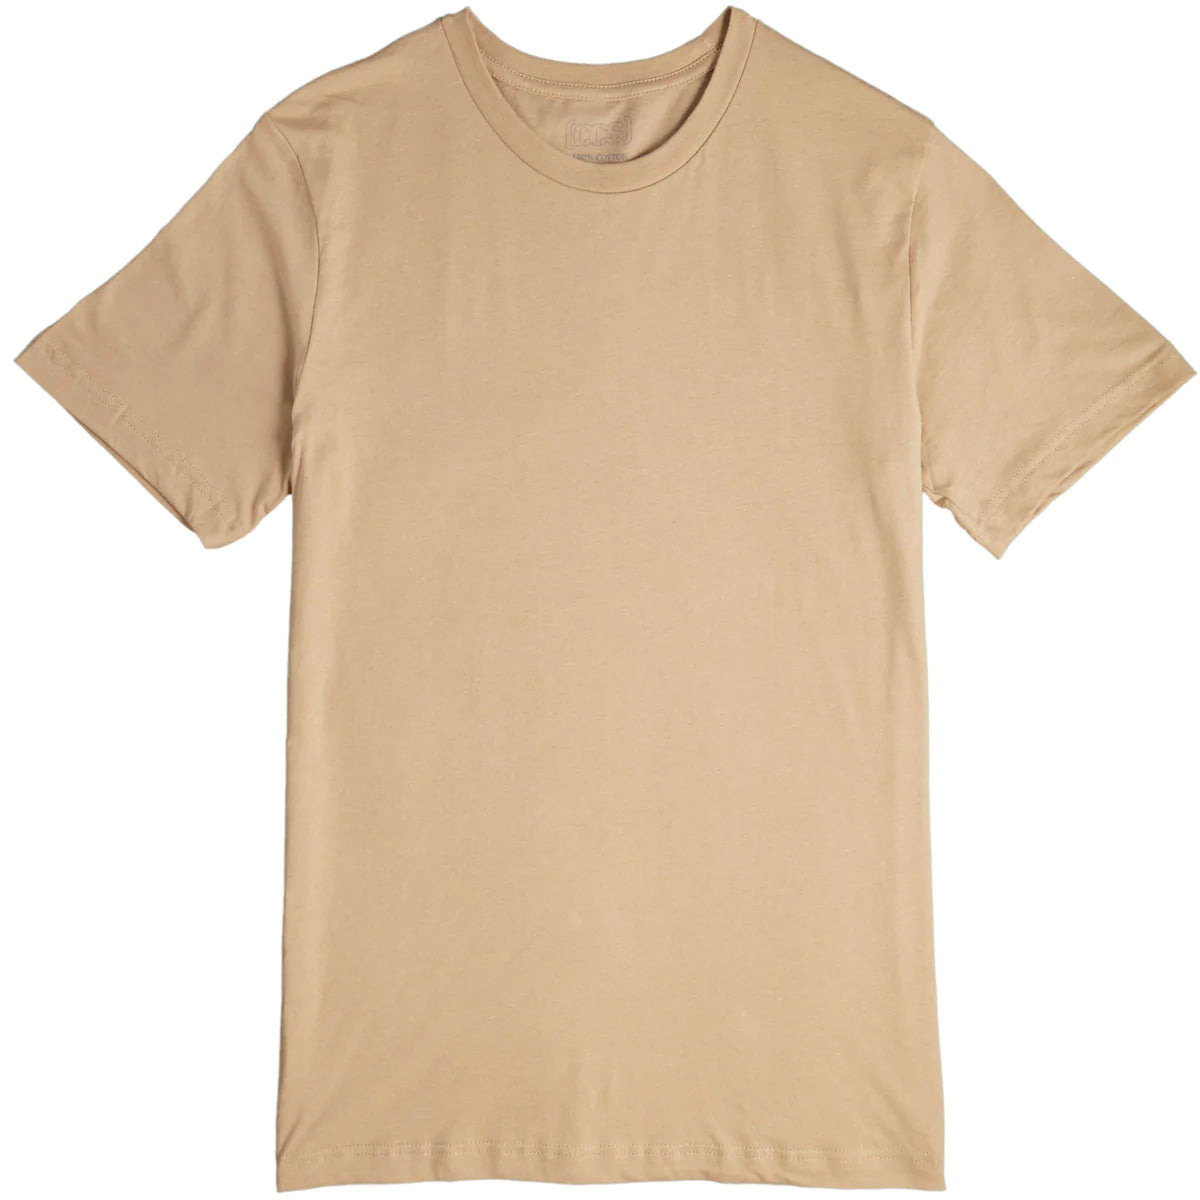 CCS Basis T-Shirt - Tan image 1